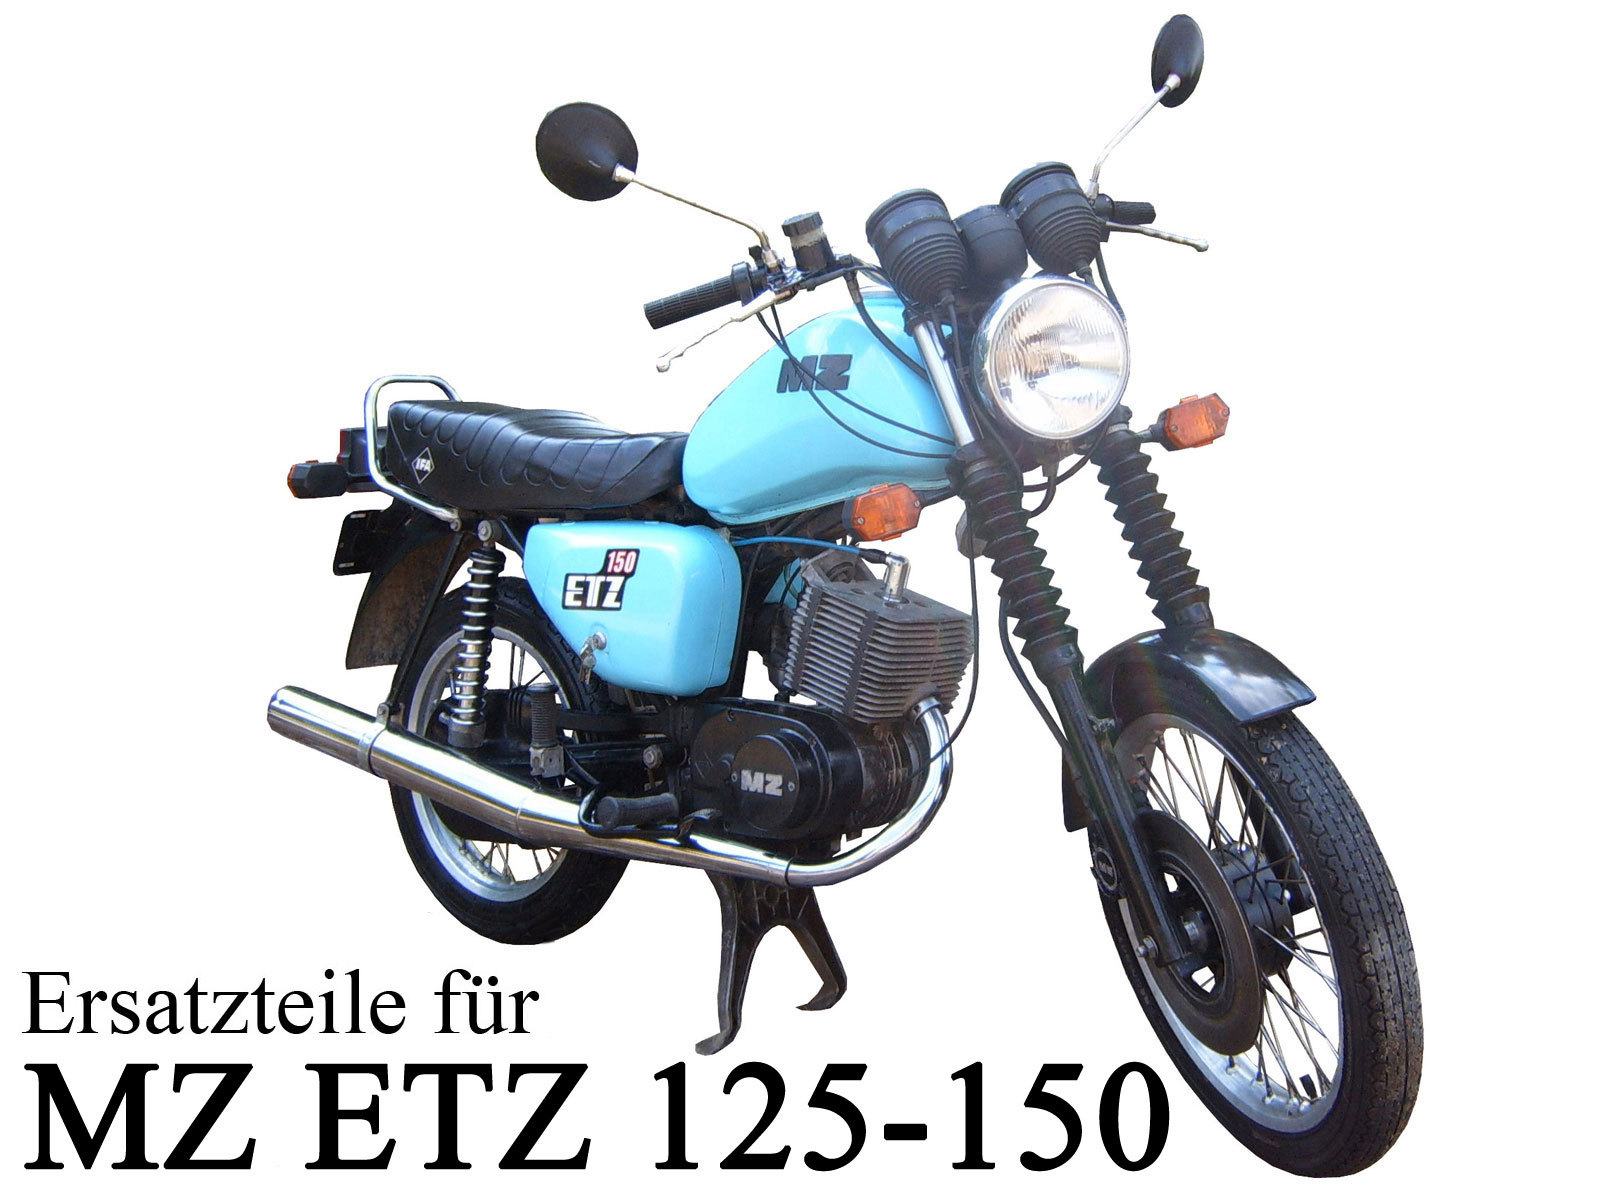 MZ ETZ 125 150 Ersatzteile